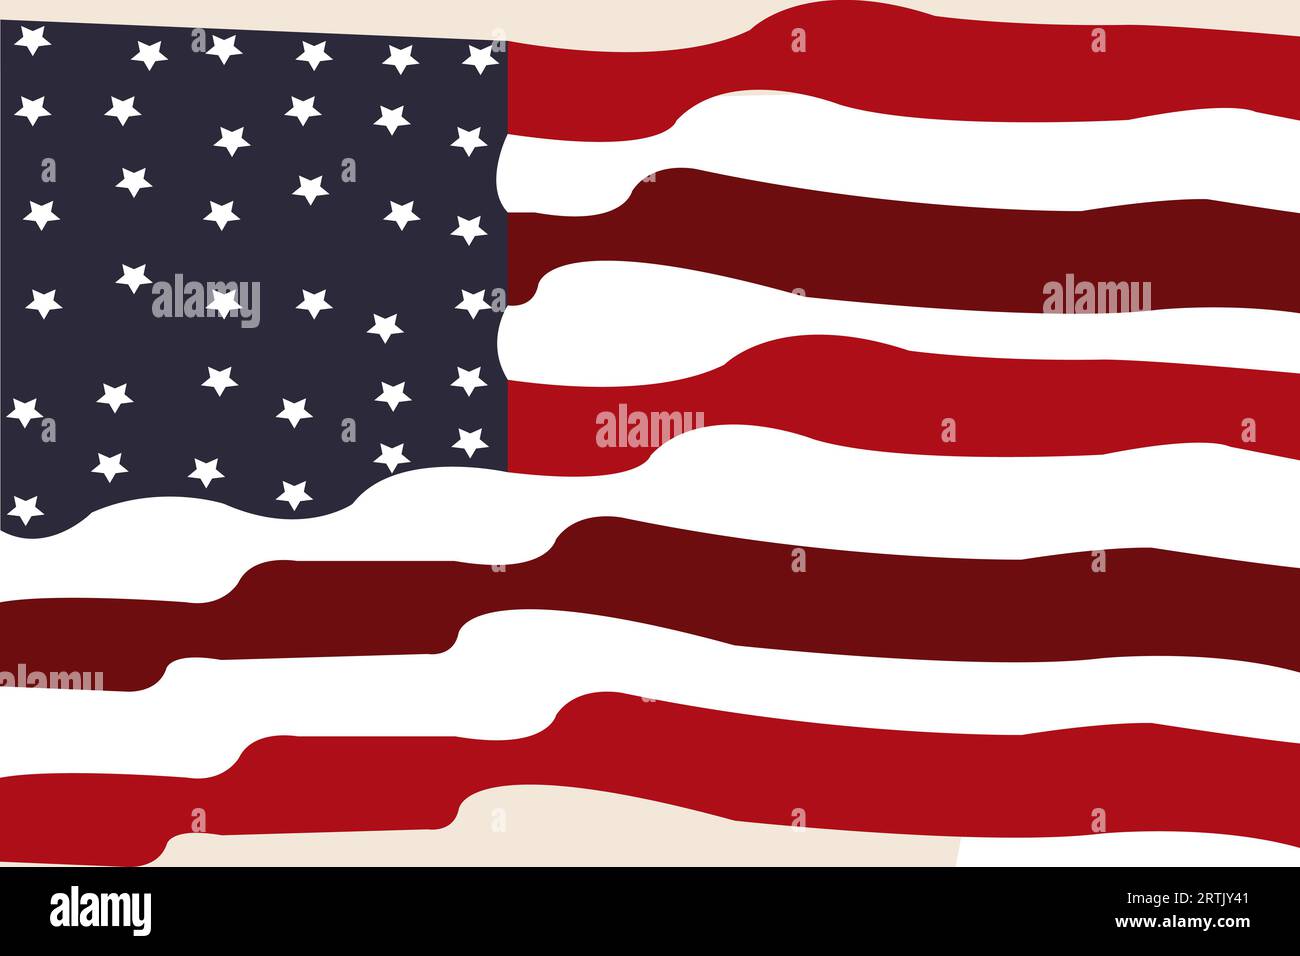 Bandera americana y árbol en la hora del amanecer de la puesta del sol. Adecuado para el Día de los Veteranos, Día de la Independencia, Día de los Caídos, 4º de julio o Día del Trabajo copyspace Antecedentes. Ilustración del Vector